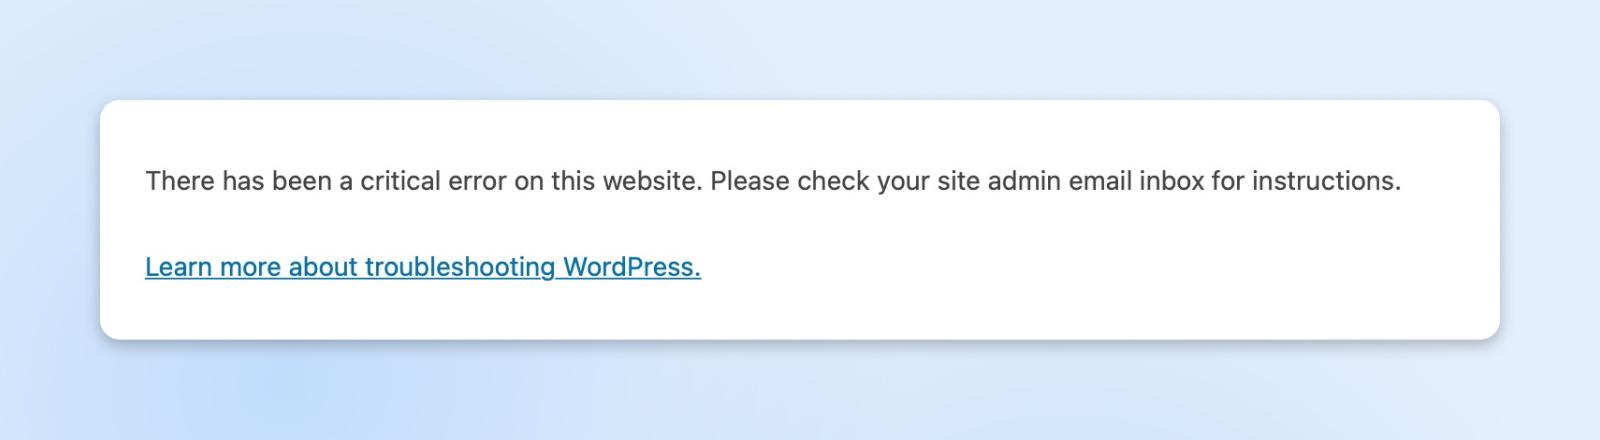 Mensaje de error de WordPress que indica "Ha habido un error crítico en este sitio web" con un enlace para solucionar el problema.